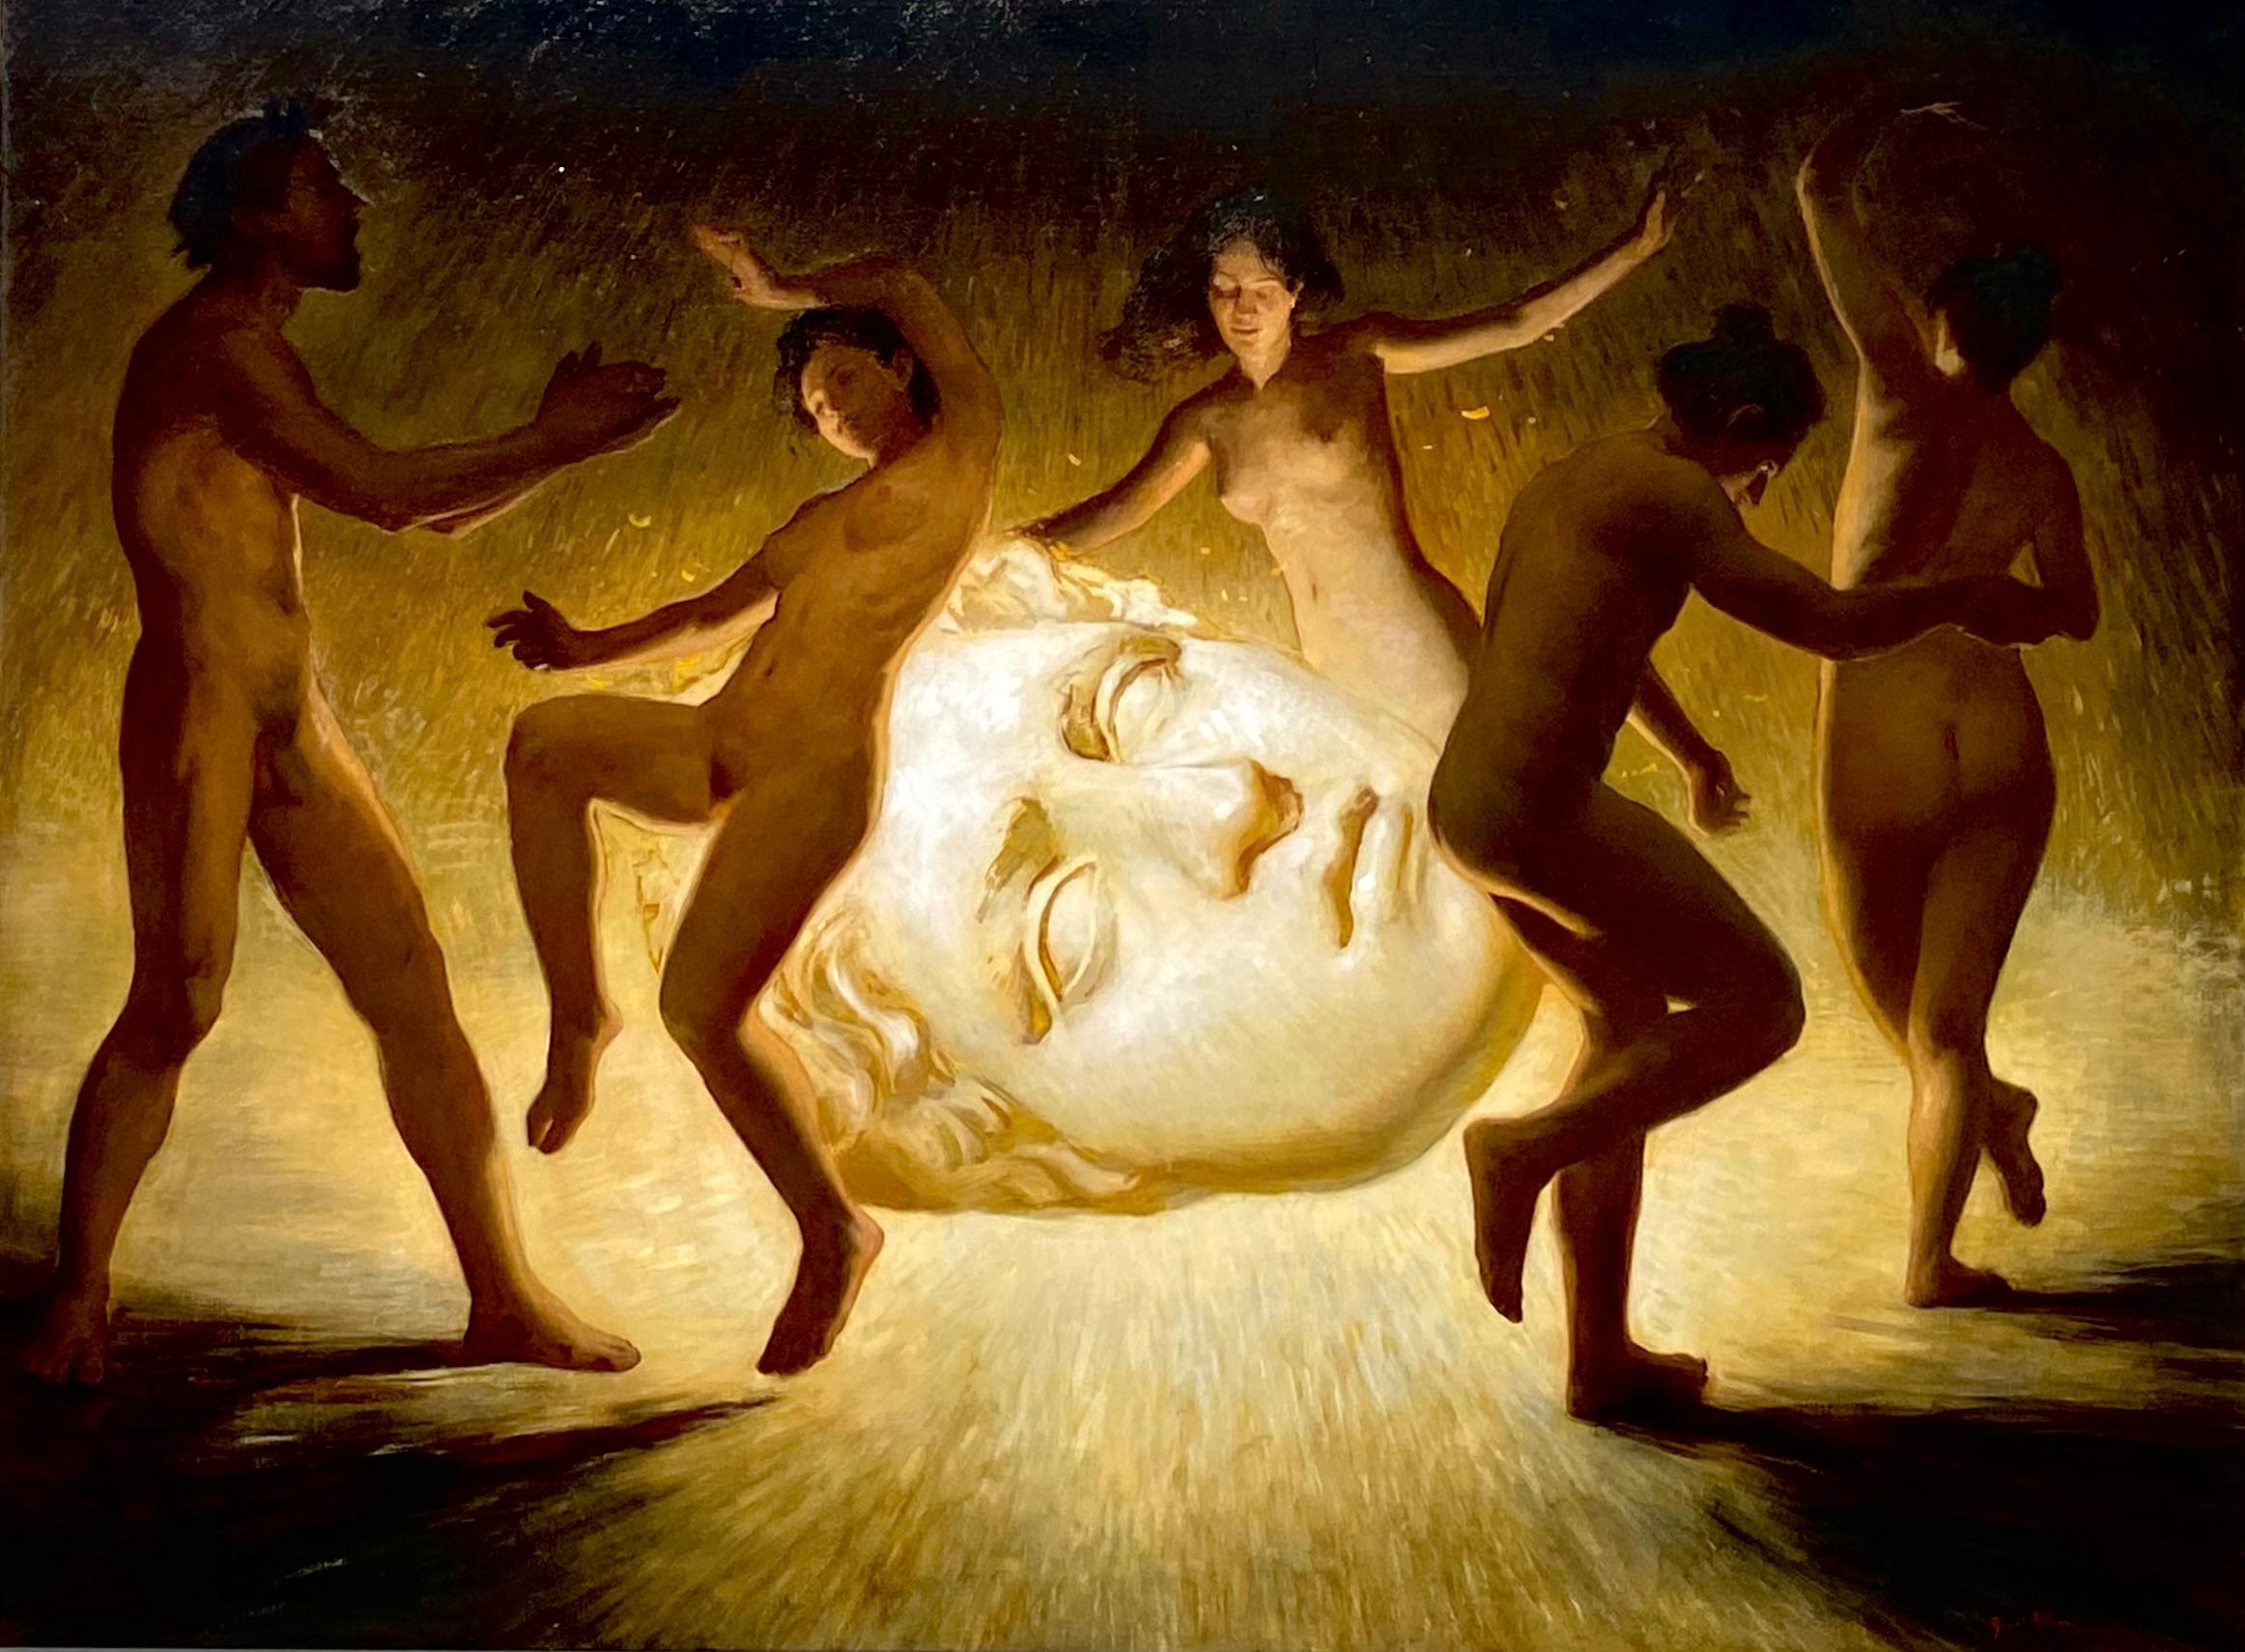 Nude Painting Daniela Astone - The Fall- 21st Century Contemporary Painting of dancing nude male & females (L'automne - peinture contemporaine du 21e siècle de nus masculins et féminins dansants)